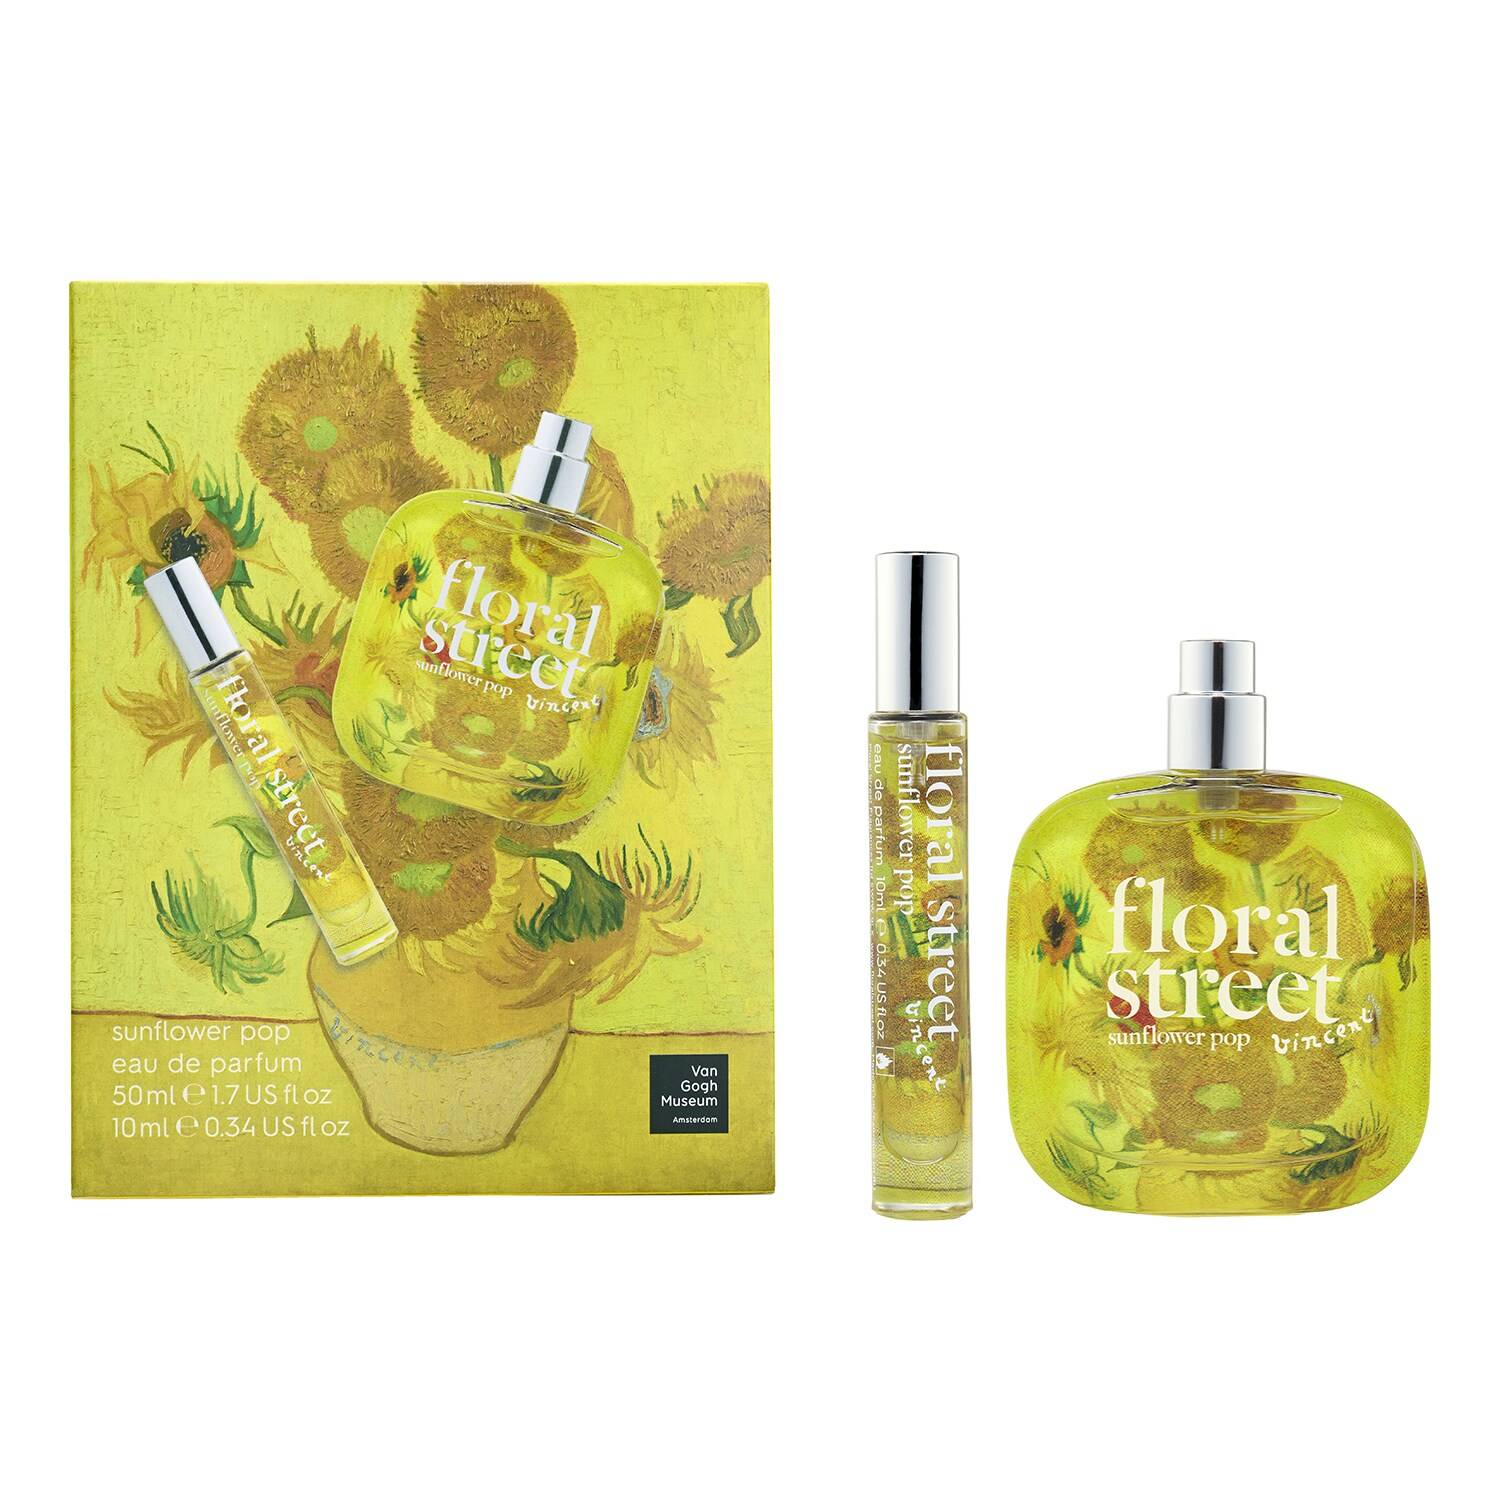 Floral Street Sunflower Pop Home & Away Gift Set